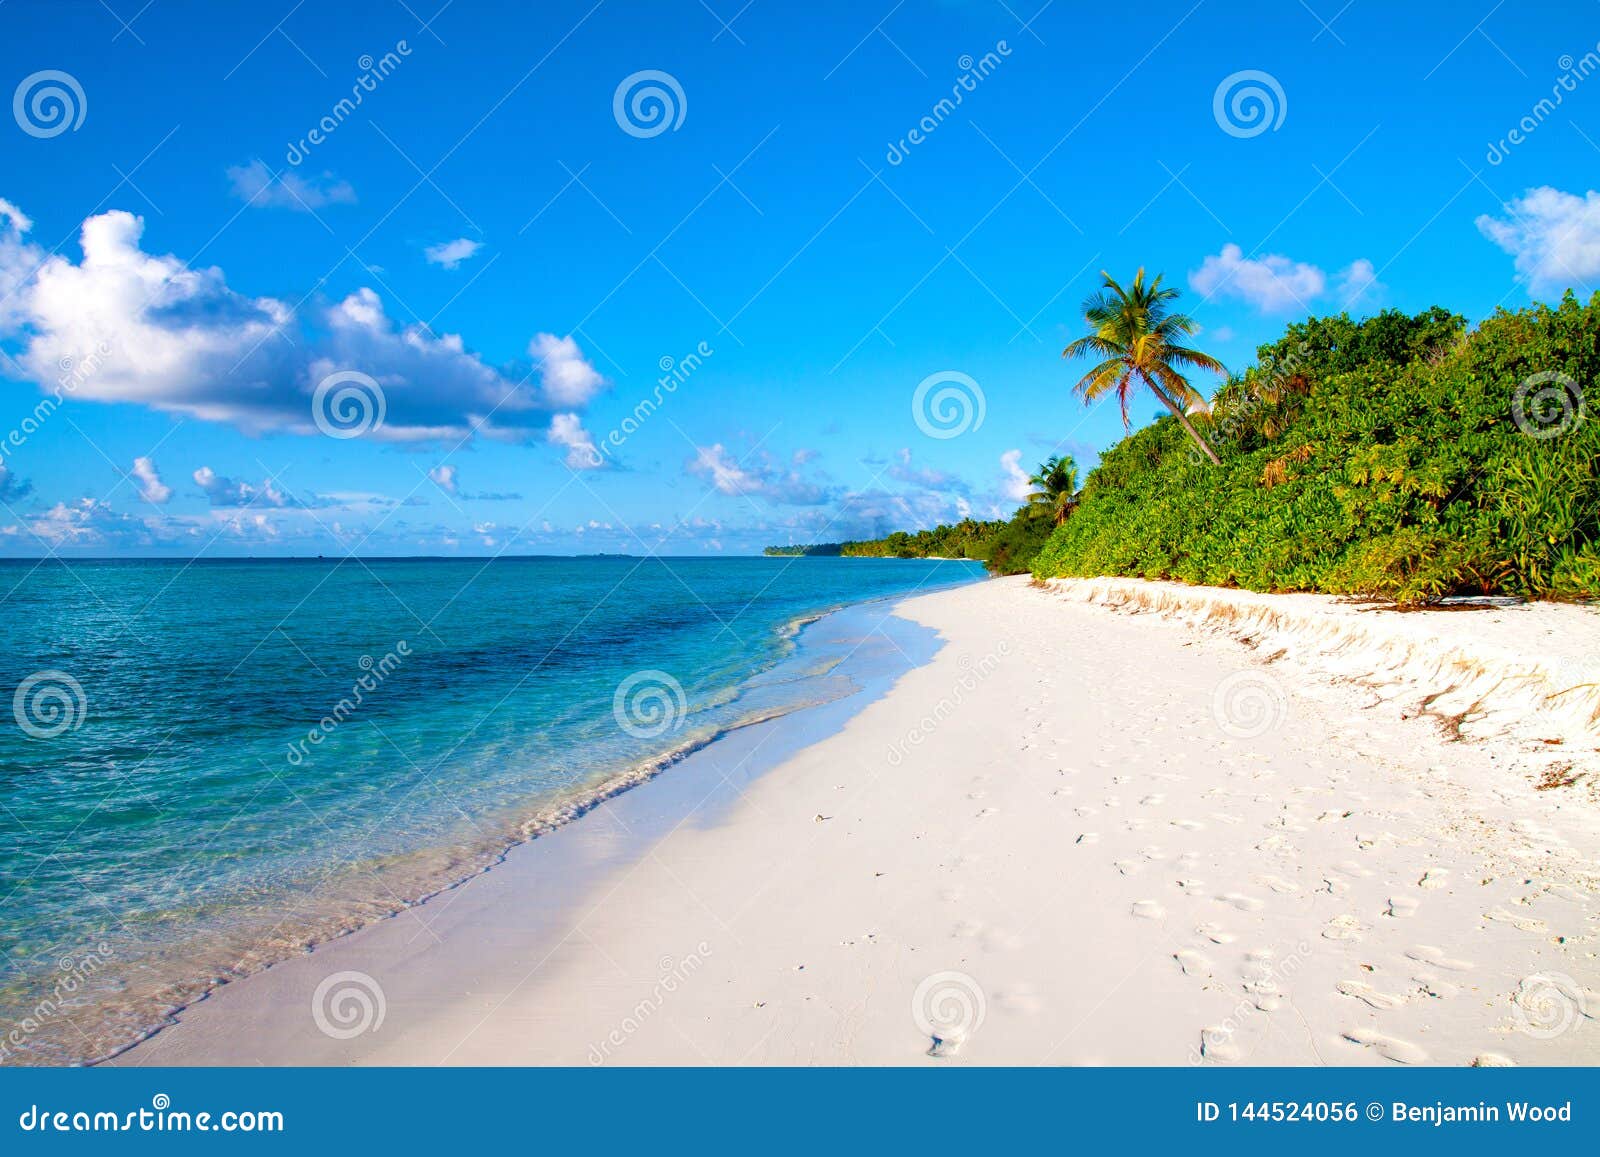 dhigurah beach